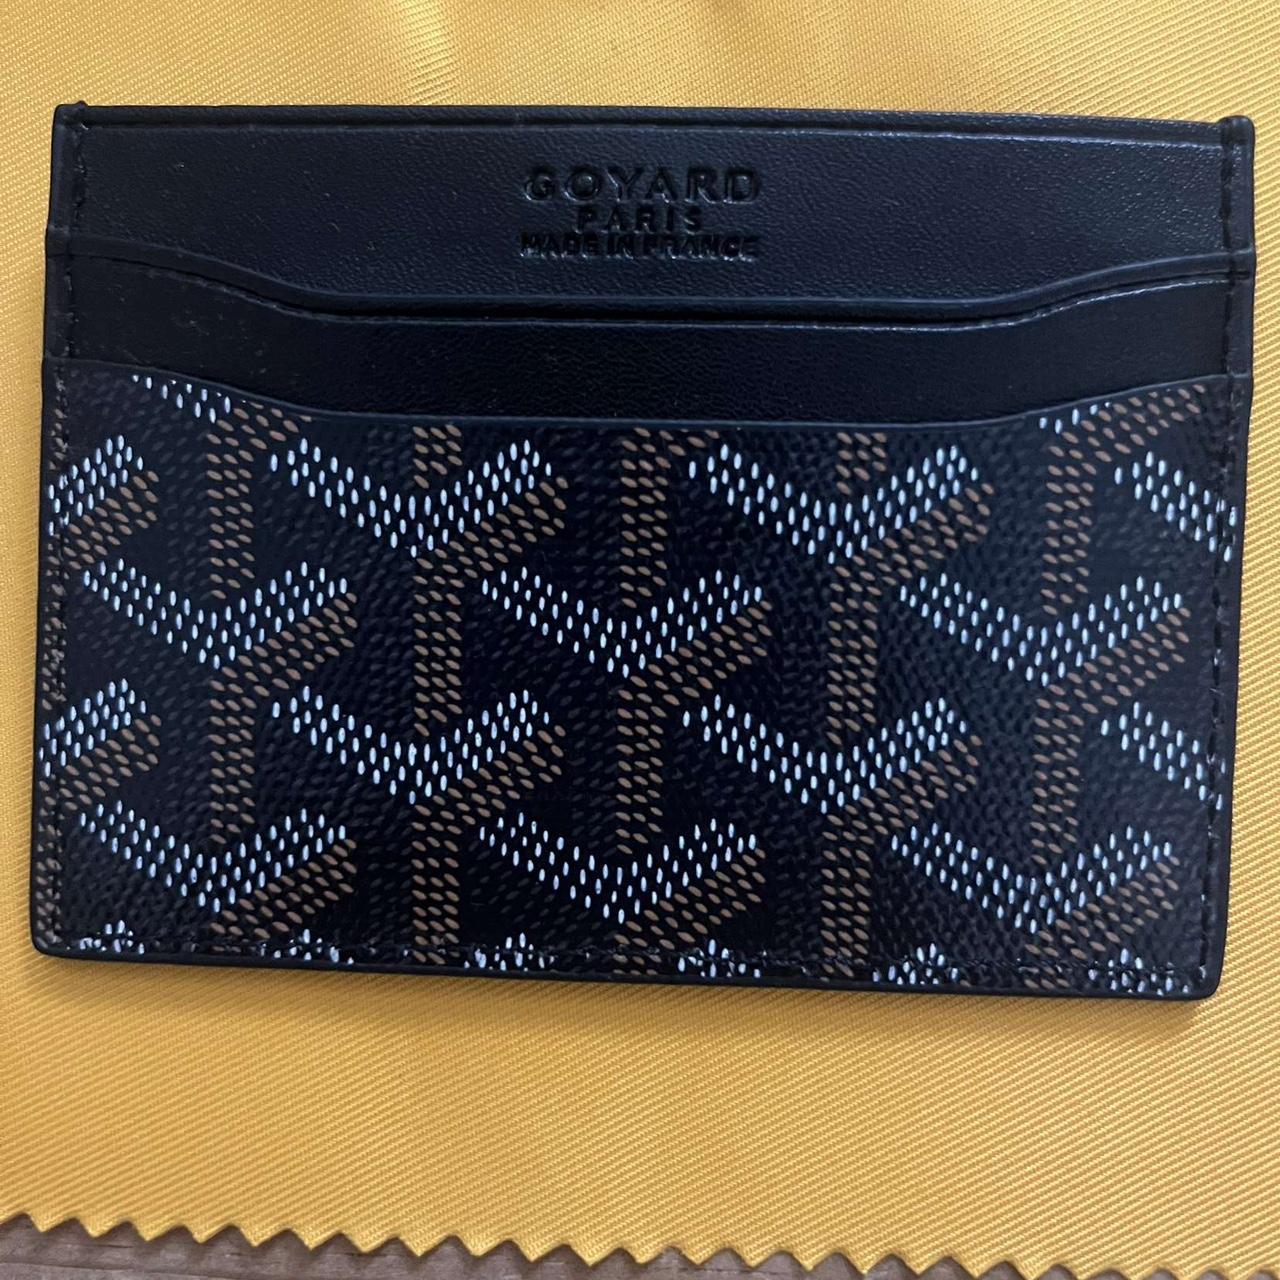 Goyard Wallet / Card Holder - Depop